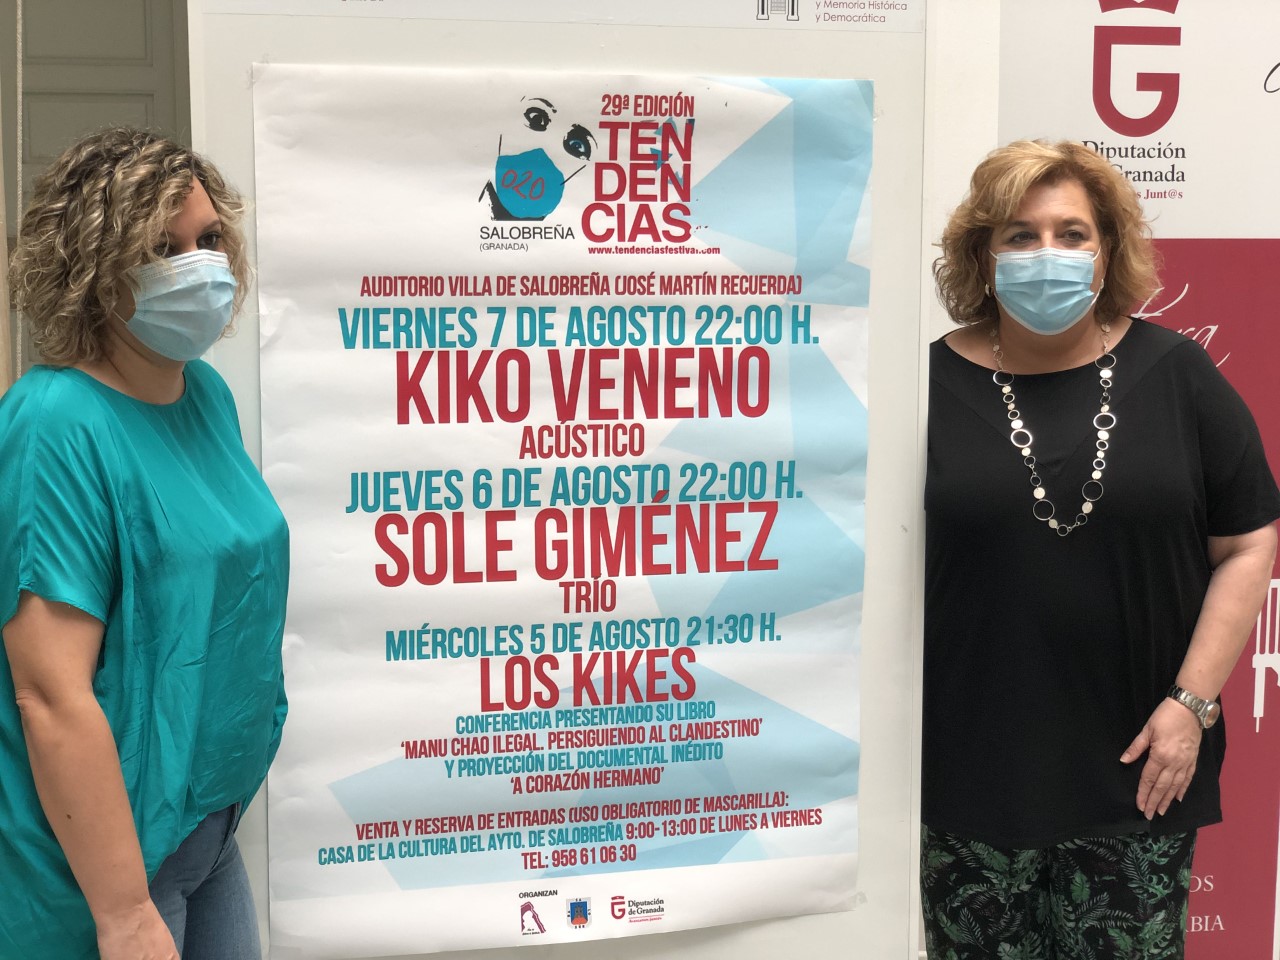 Kiko Veneno y Sole Giménez protagonizan la 29 edición del Festival Tendencias de Salobreña